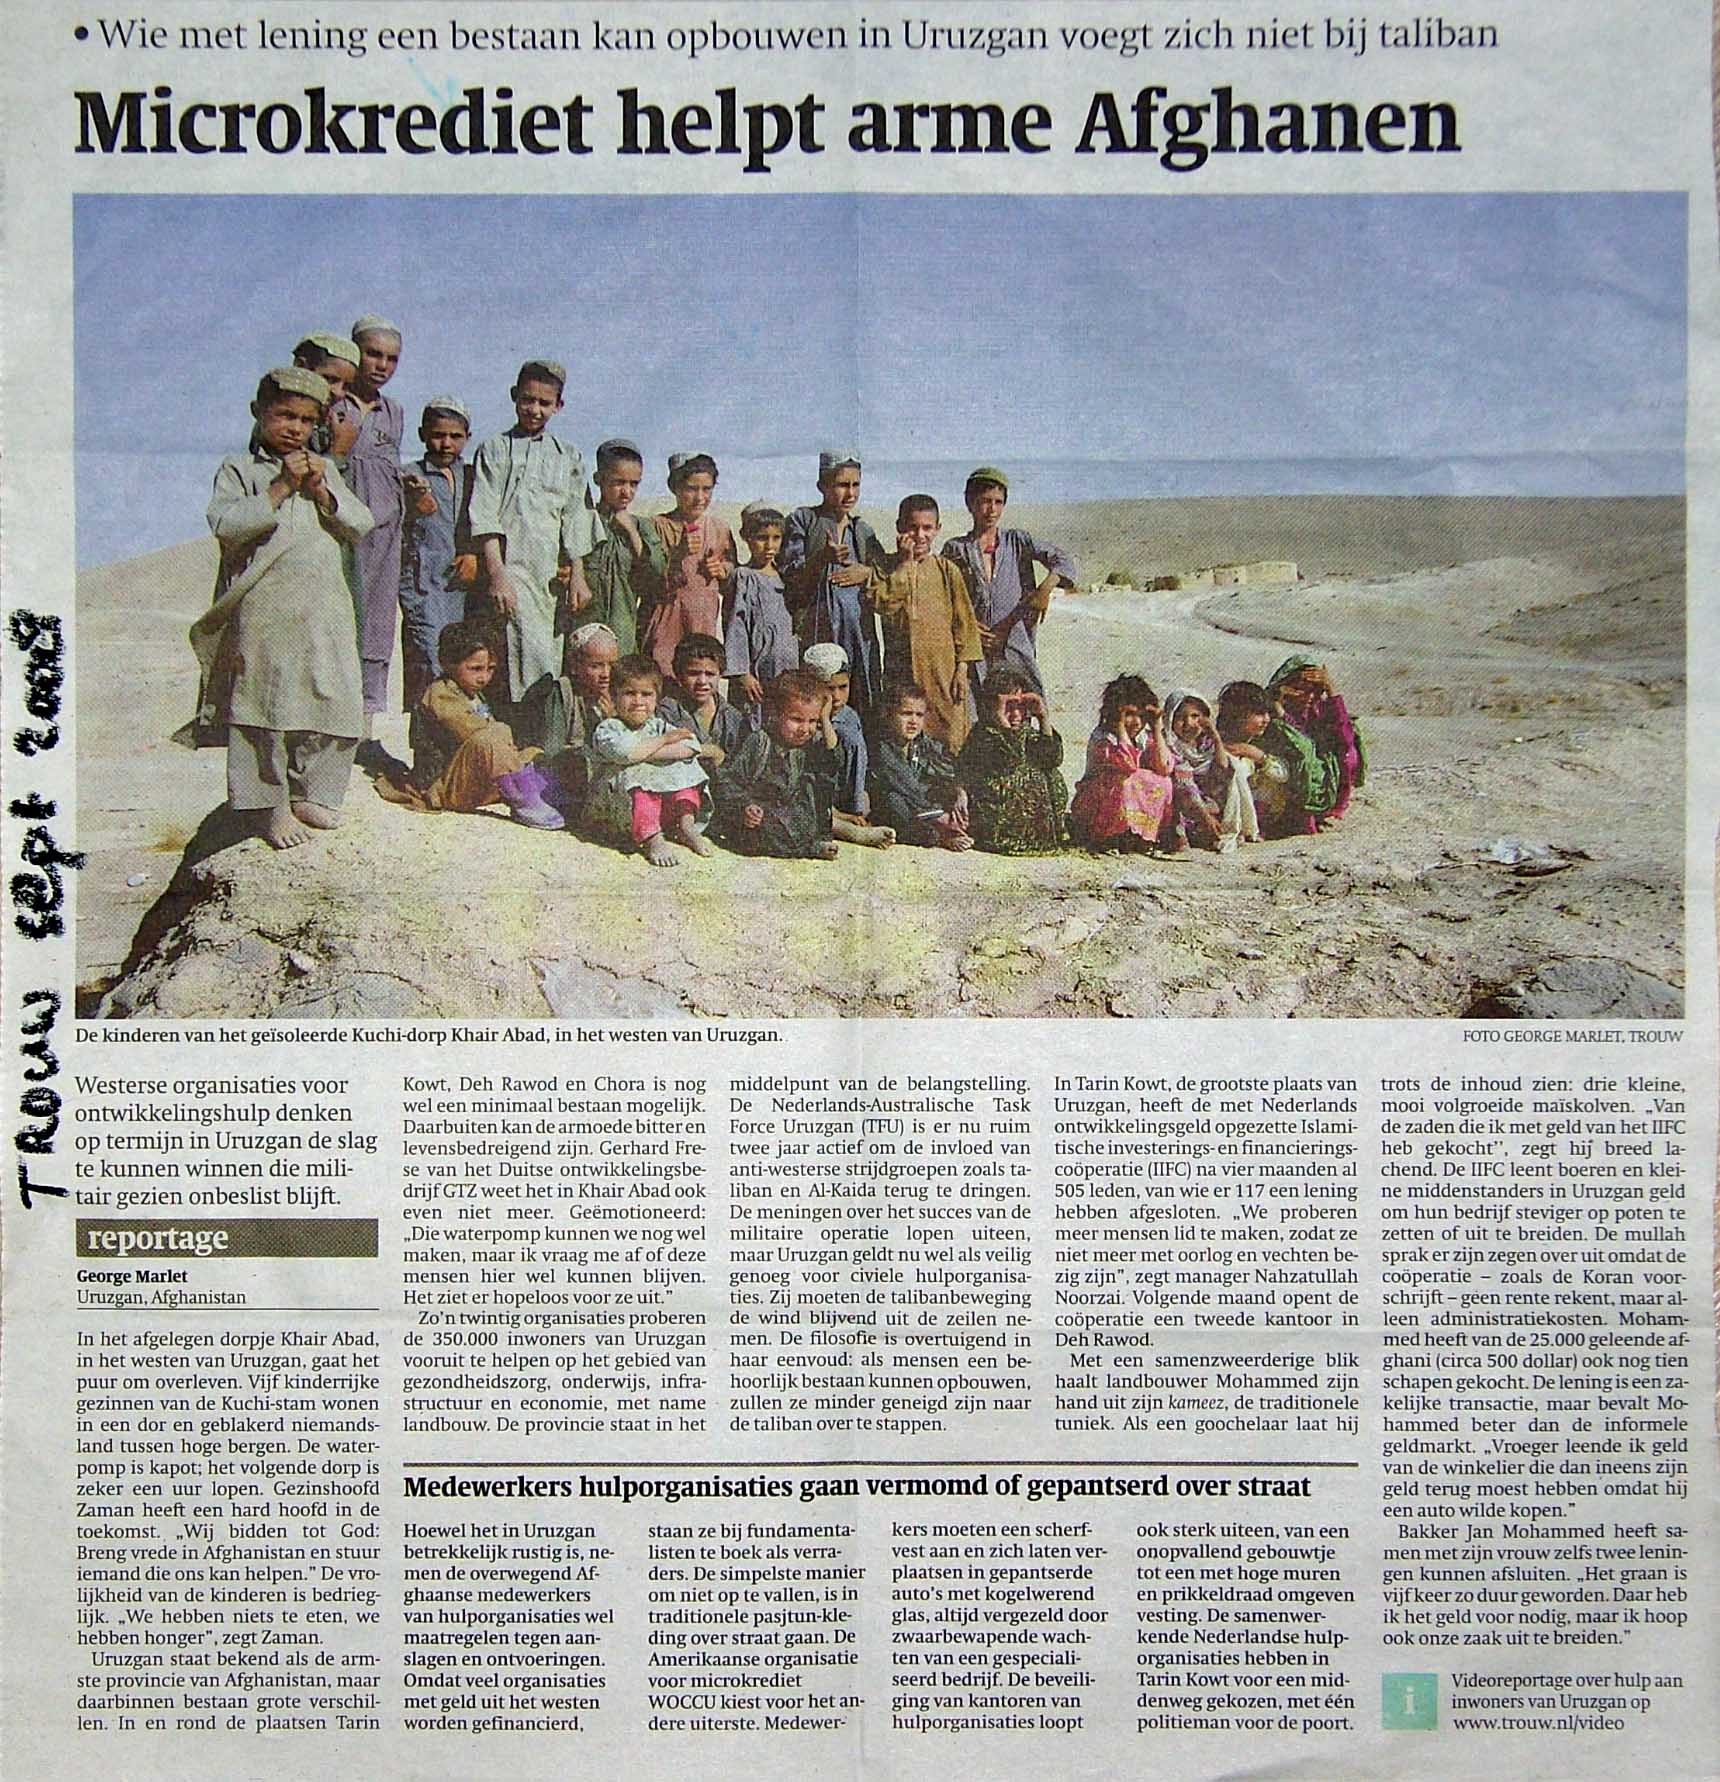 Microkrediet Afhanistan